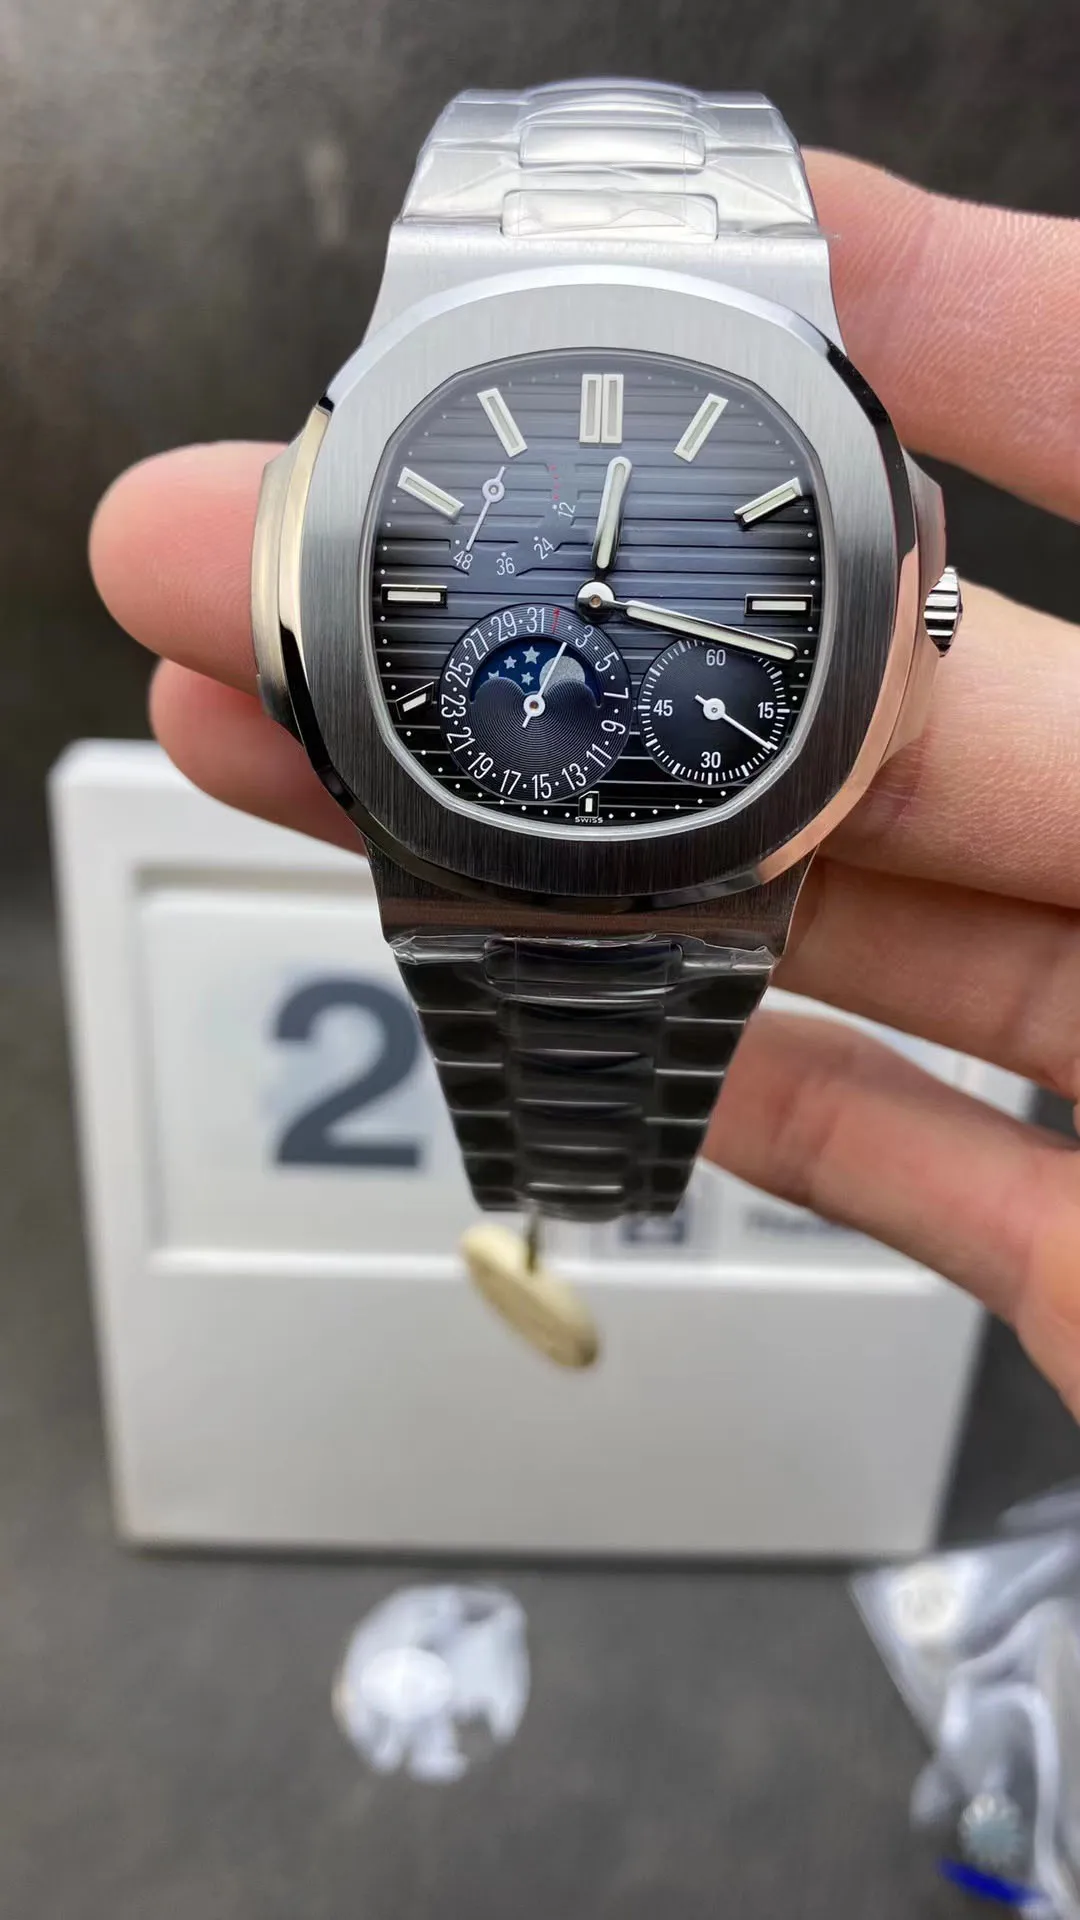 ZF Luxury Watch PP 5712 V2 Diameter 40 мм истинная кинетическая накопление кинетической энергии календарь лунный фазовый дисплей 324S Автоматическое движение цепи